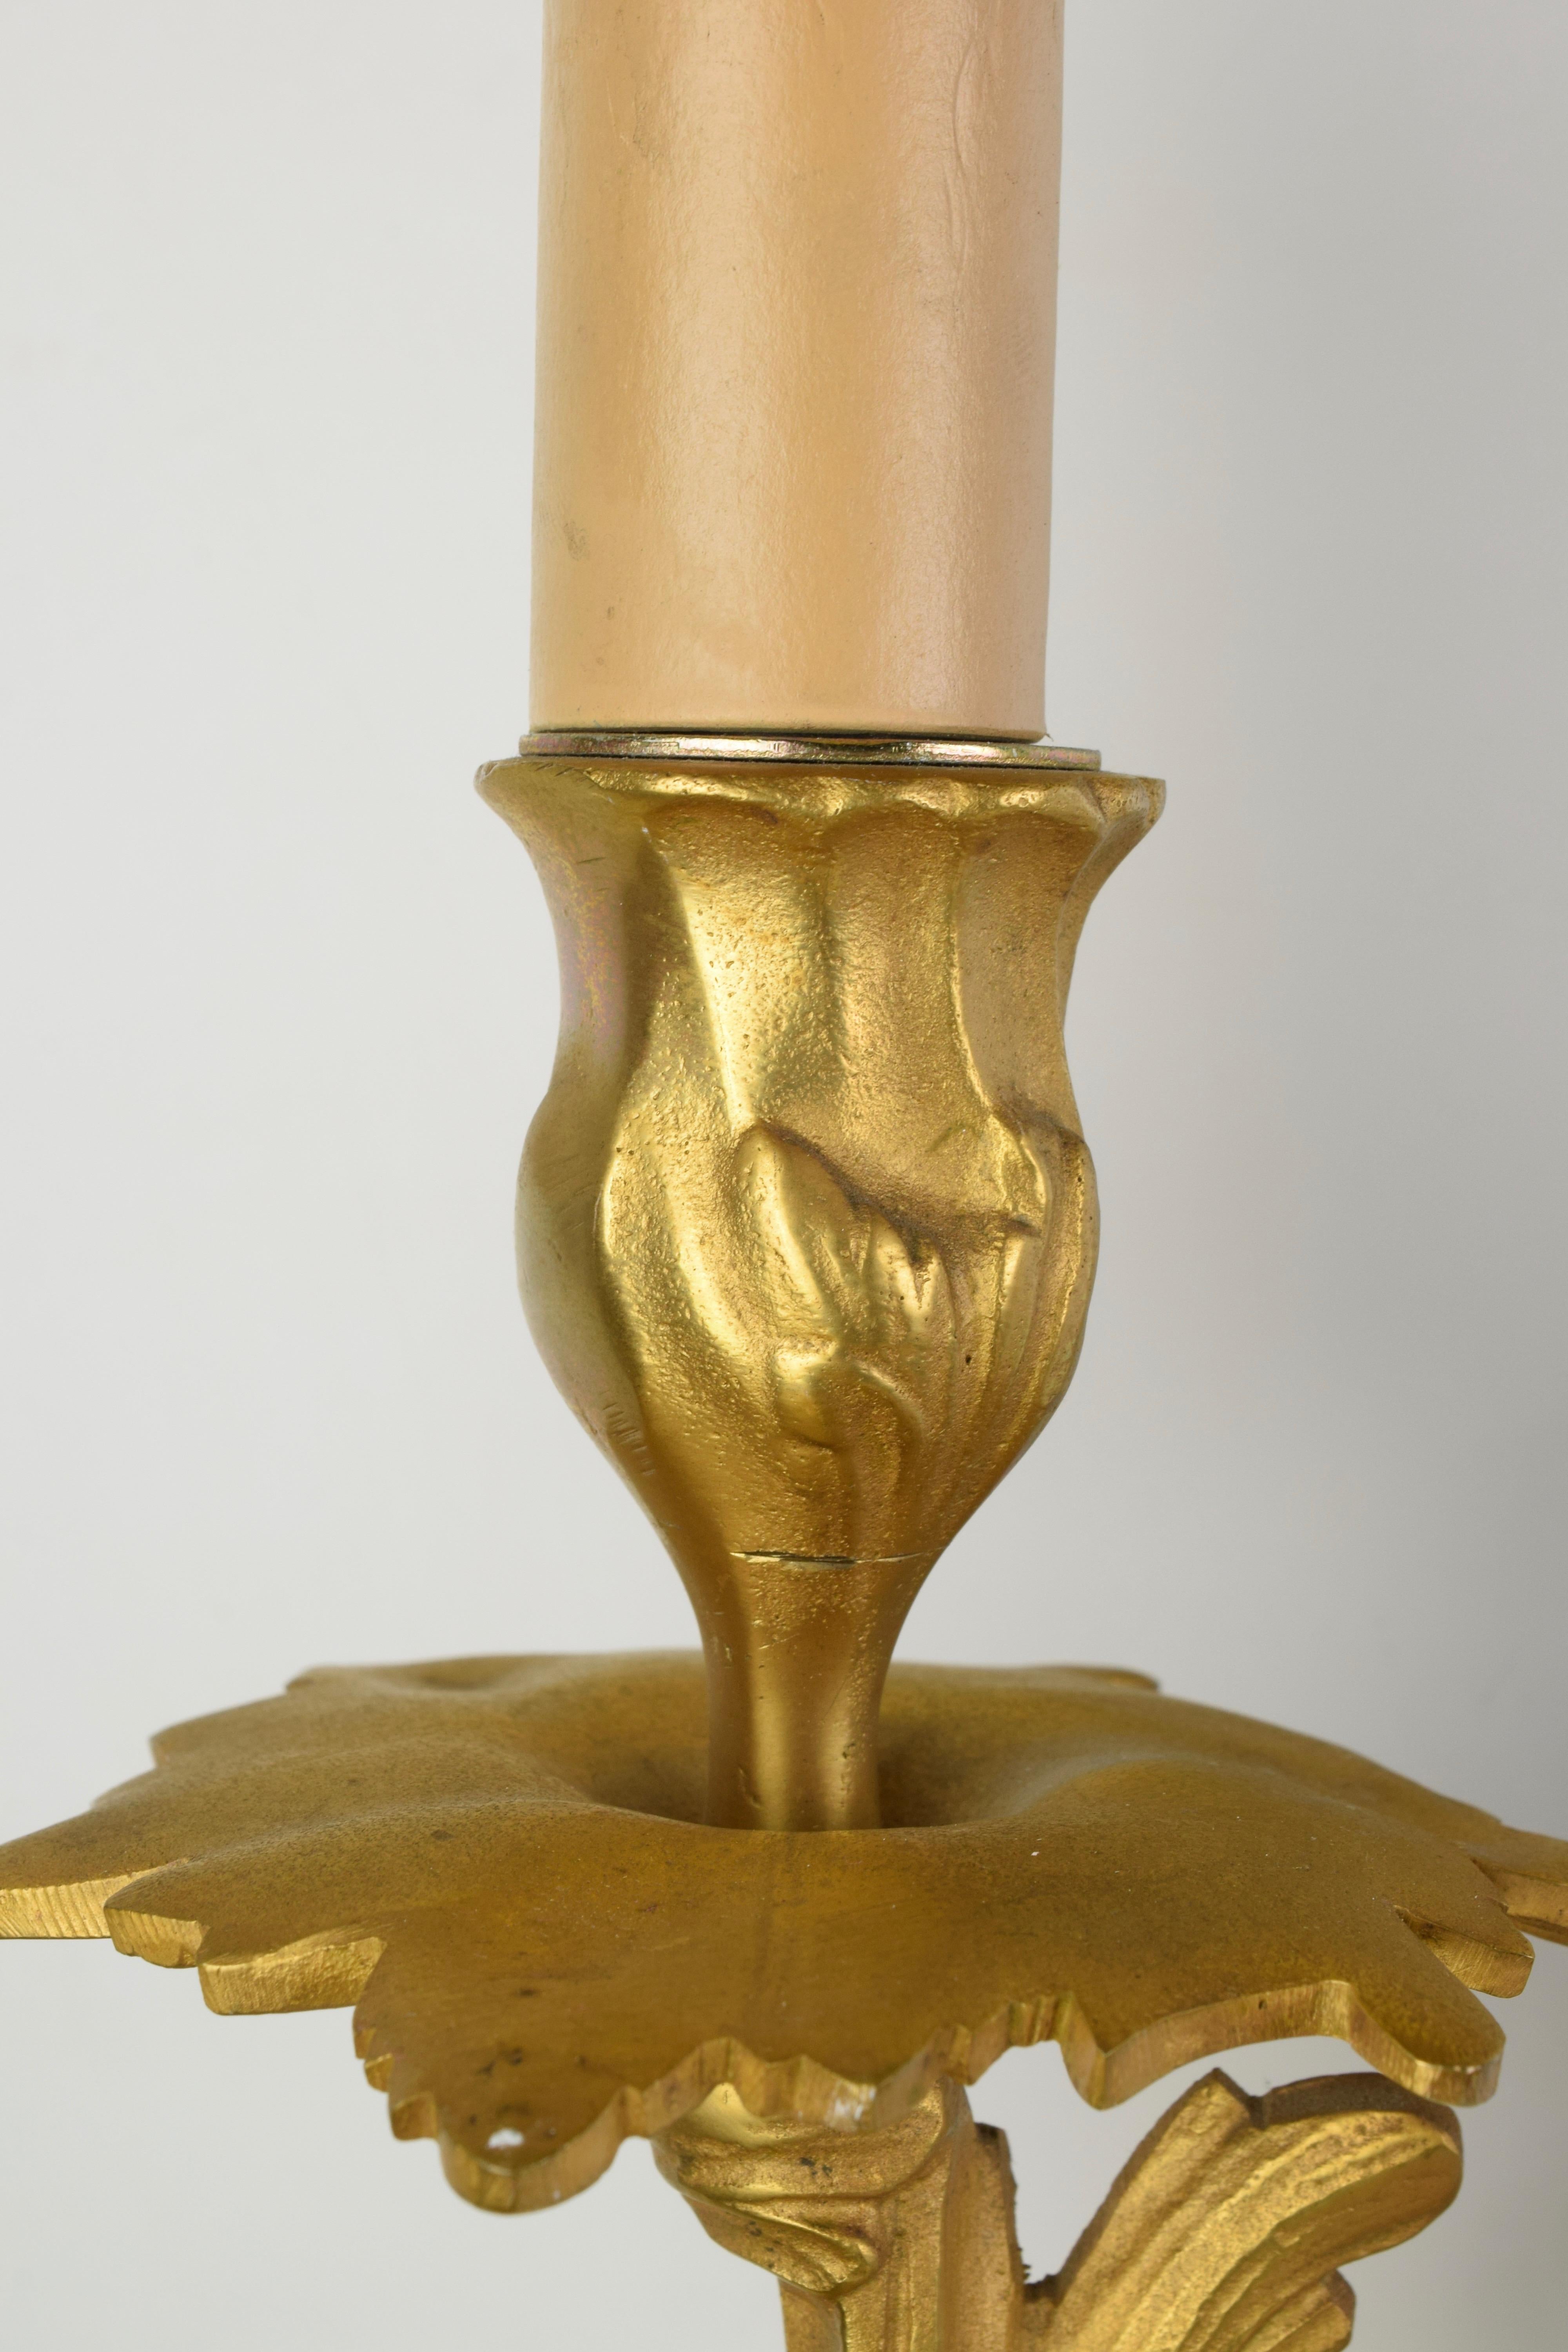 Italie, milieu du 20e siècle
Deux lumières
Décorée de feuilles d'acanthe à thème floral, typique du style Louis XV.
Câblage électrique et bougie d'allumage pour ampoules avec douille E14.